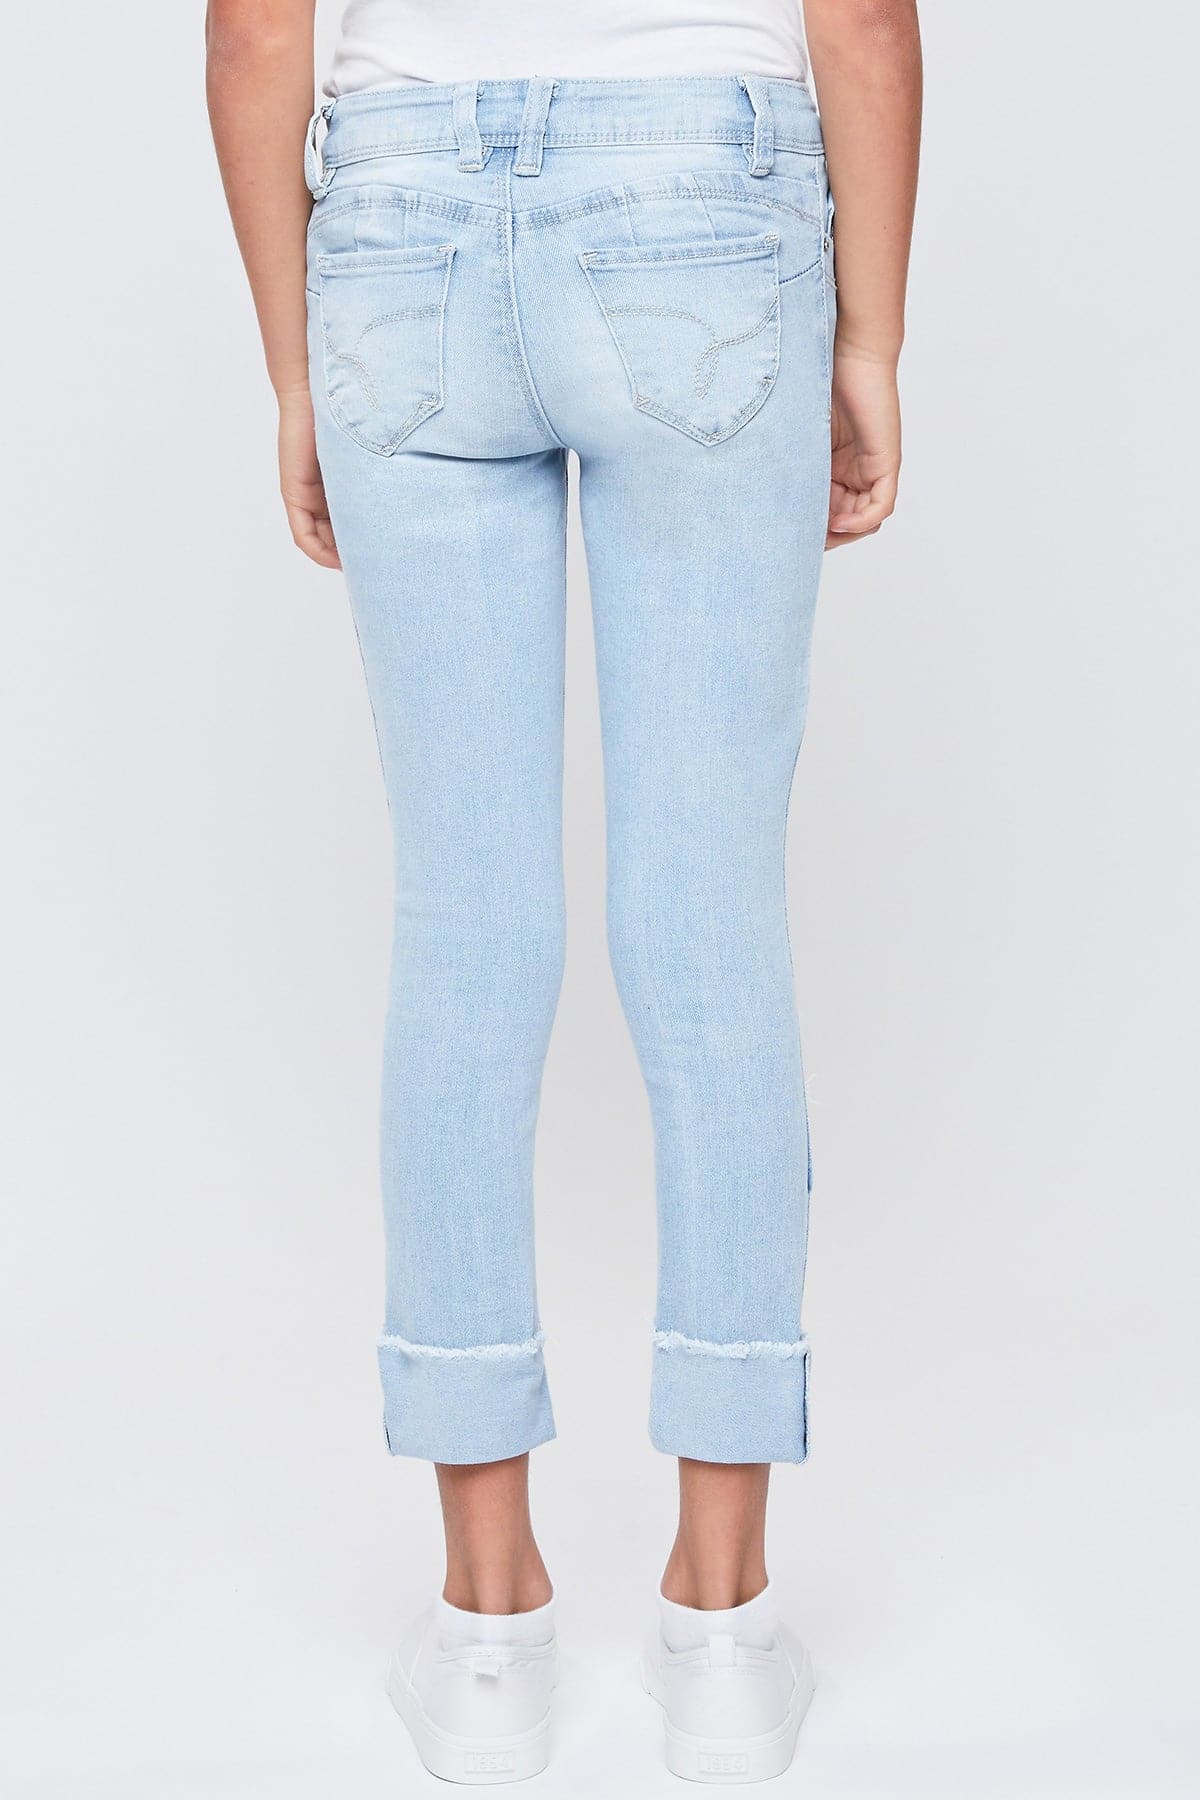 Girls WannaBettaFit Mid-Rise Mega Cuff Skinny Jeans